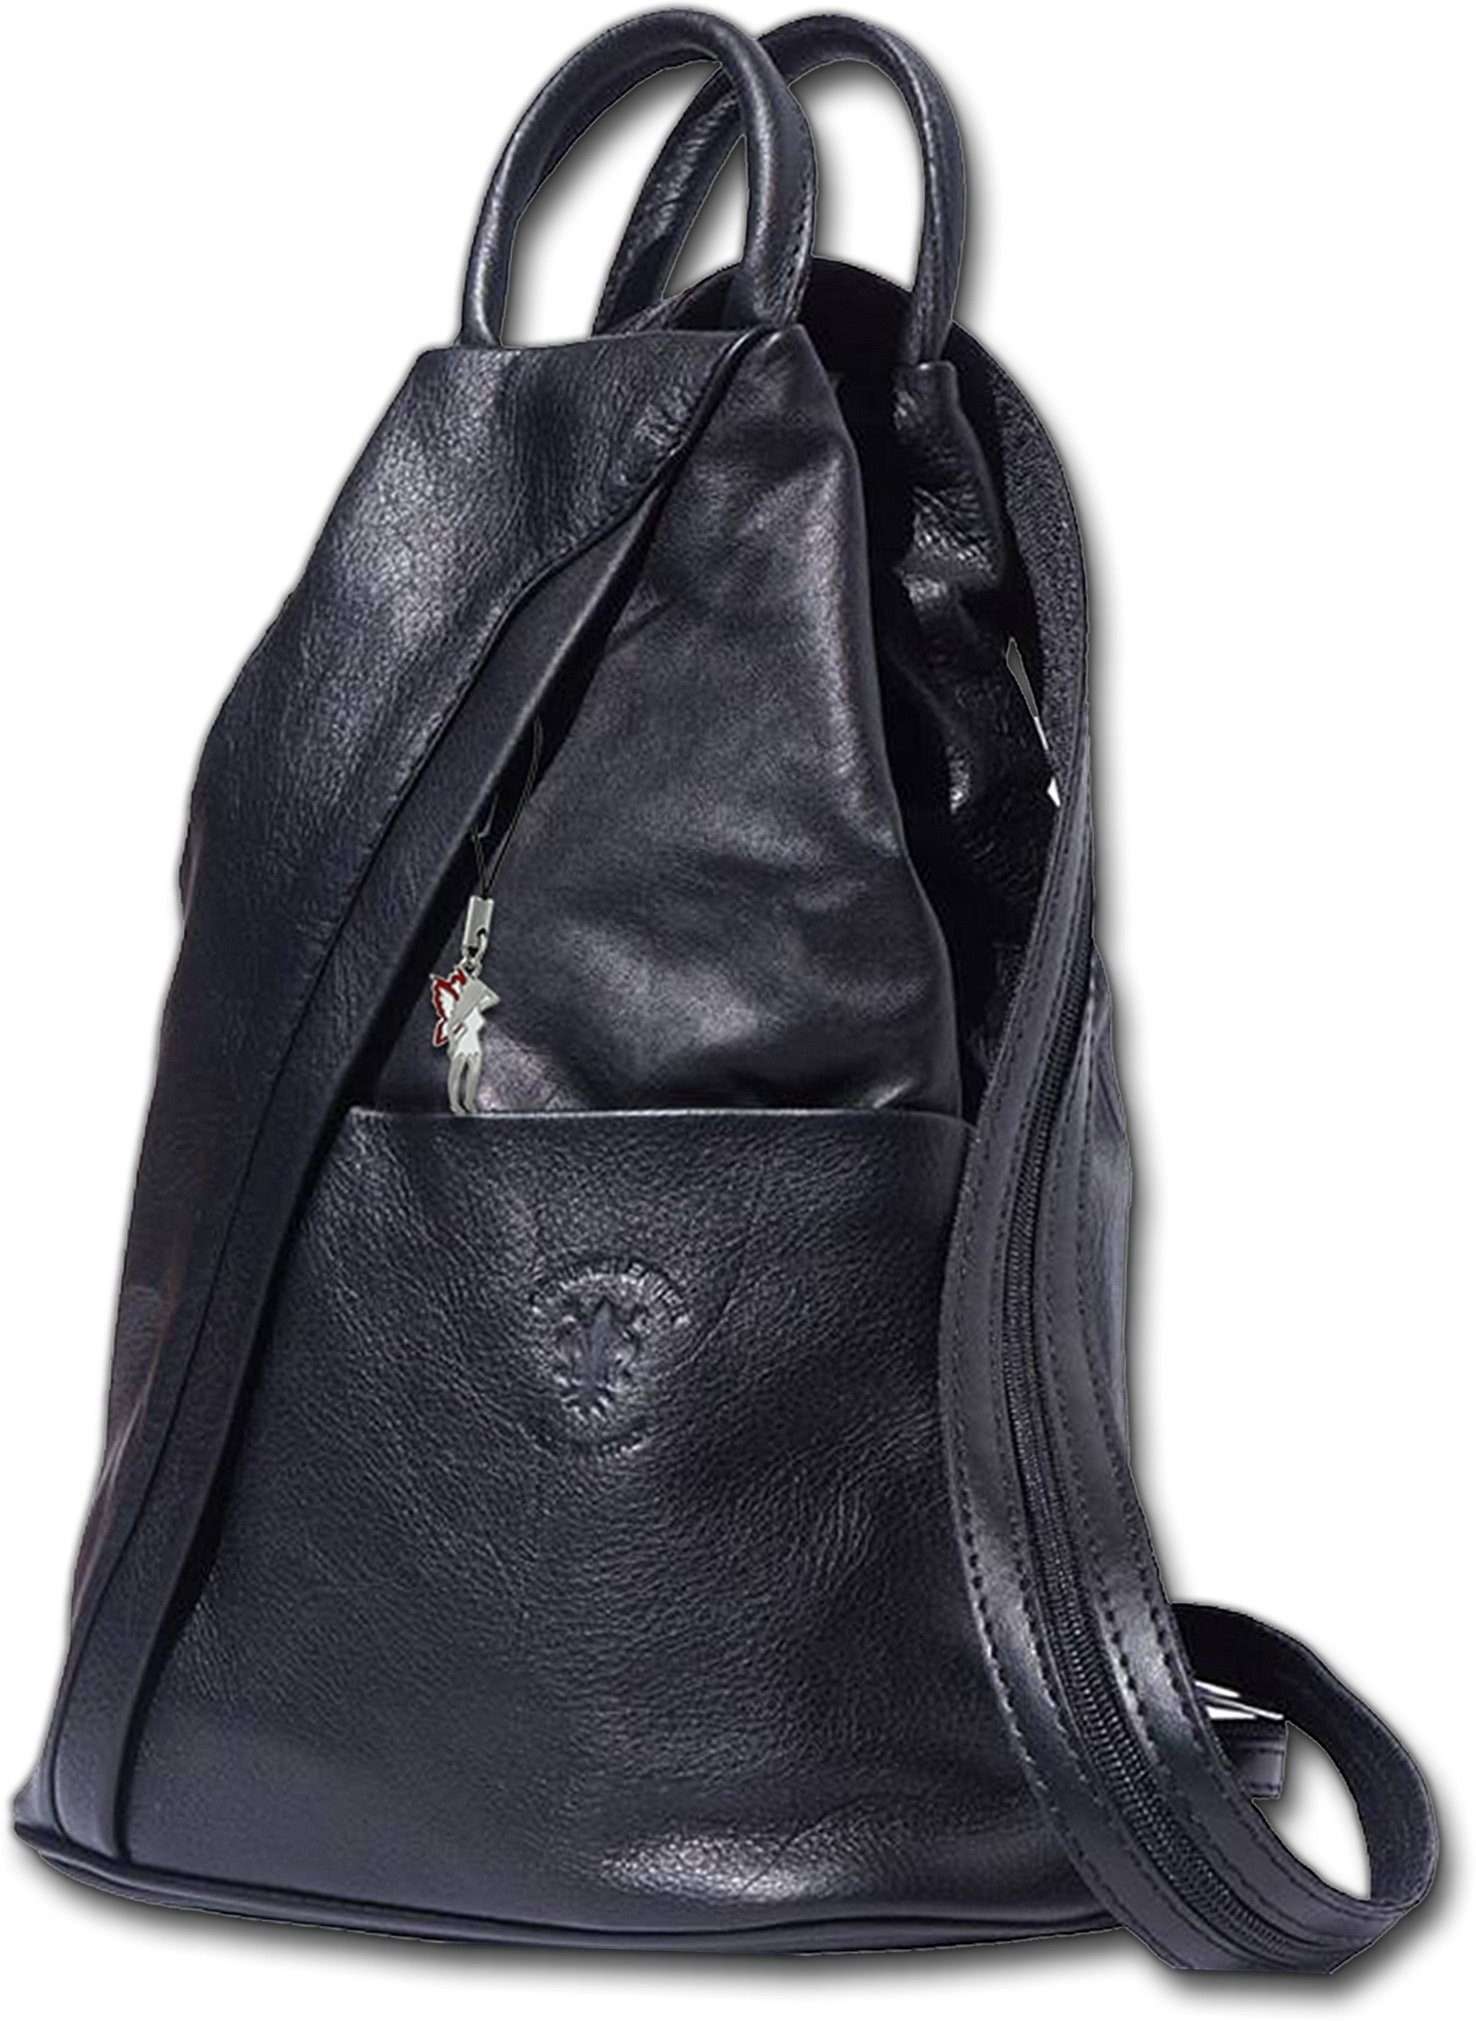 FLORENCE Cityrucksack »Florence echtes Leder Damentasche«, Damen Rucksack,  Tasche aus Echtleder in schwarz, ca. 26cm Breite, Made-In Italy